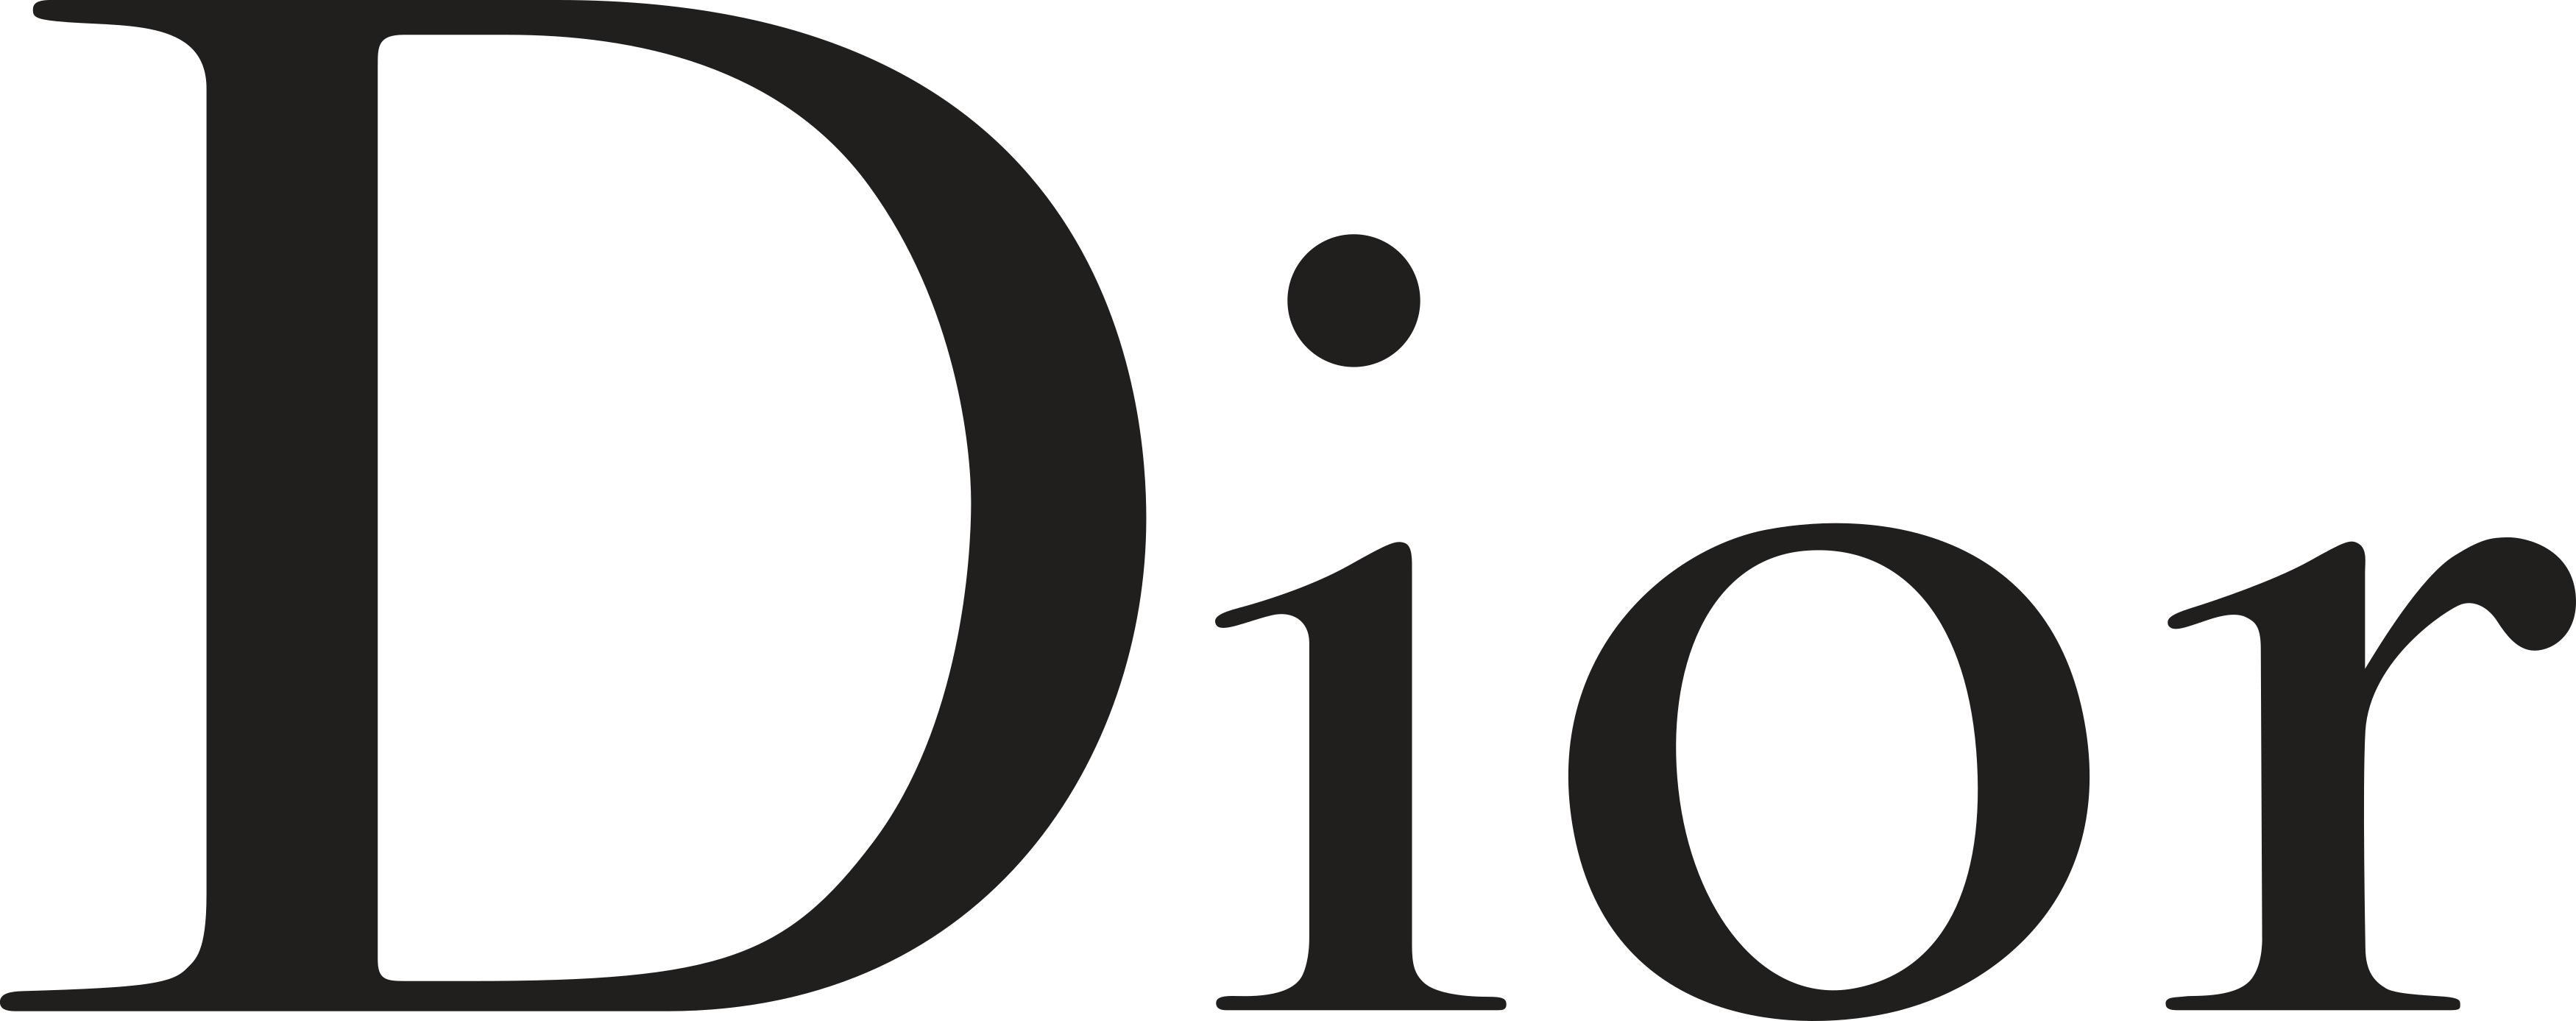 Christian Haute Couture Dior Logo Chanel Se Clipart